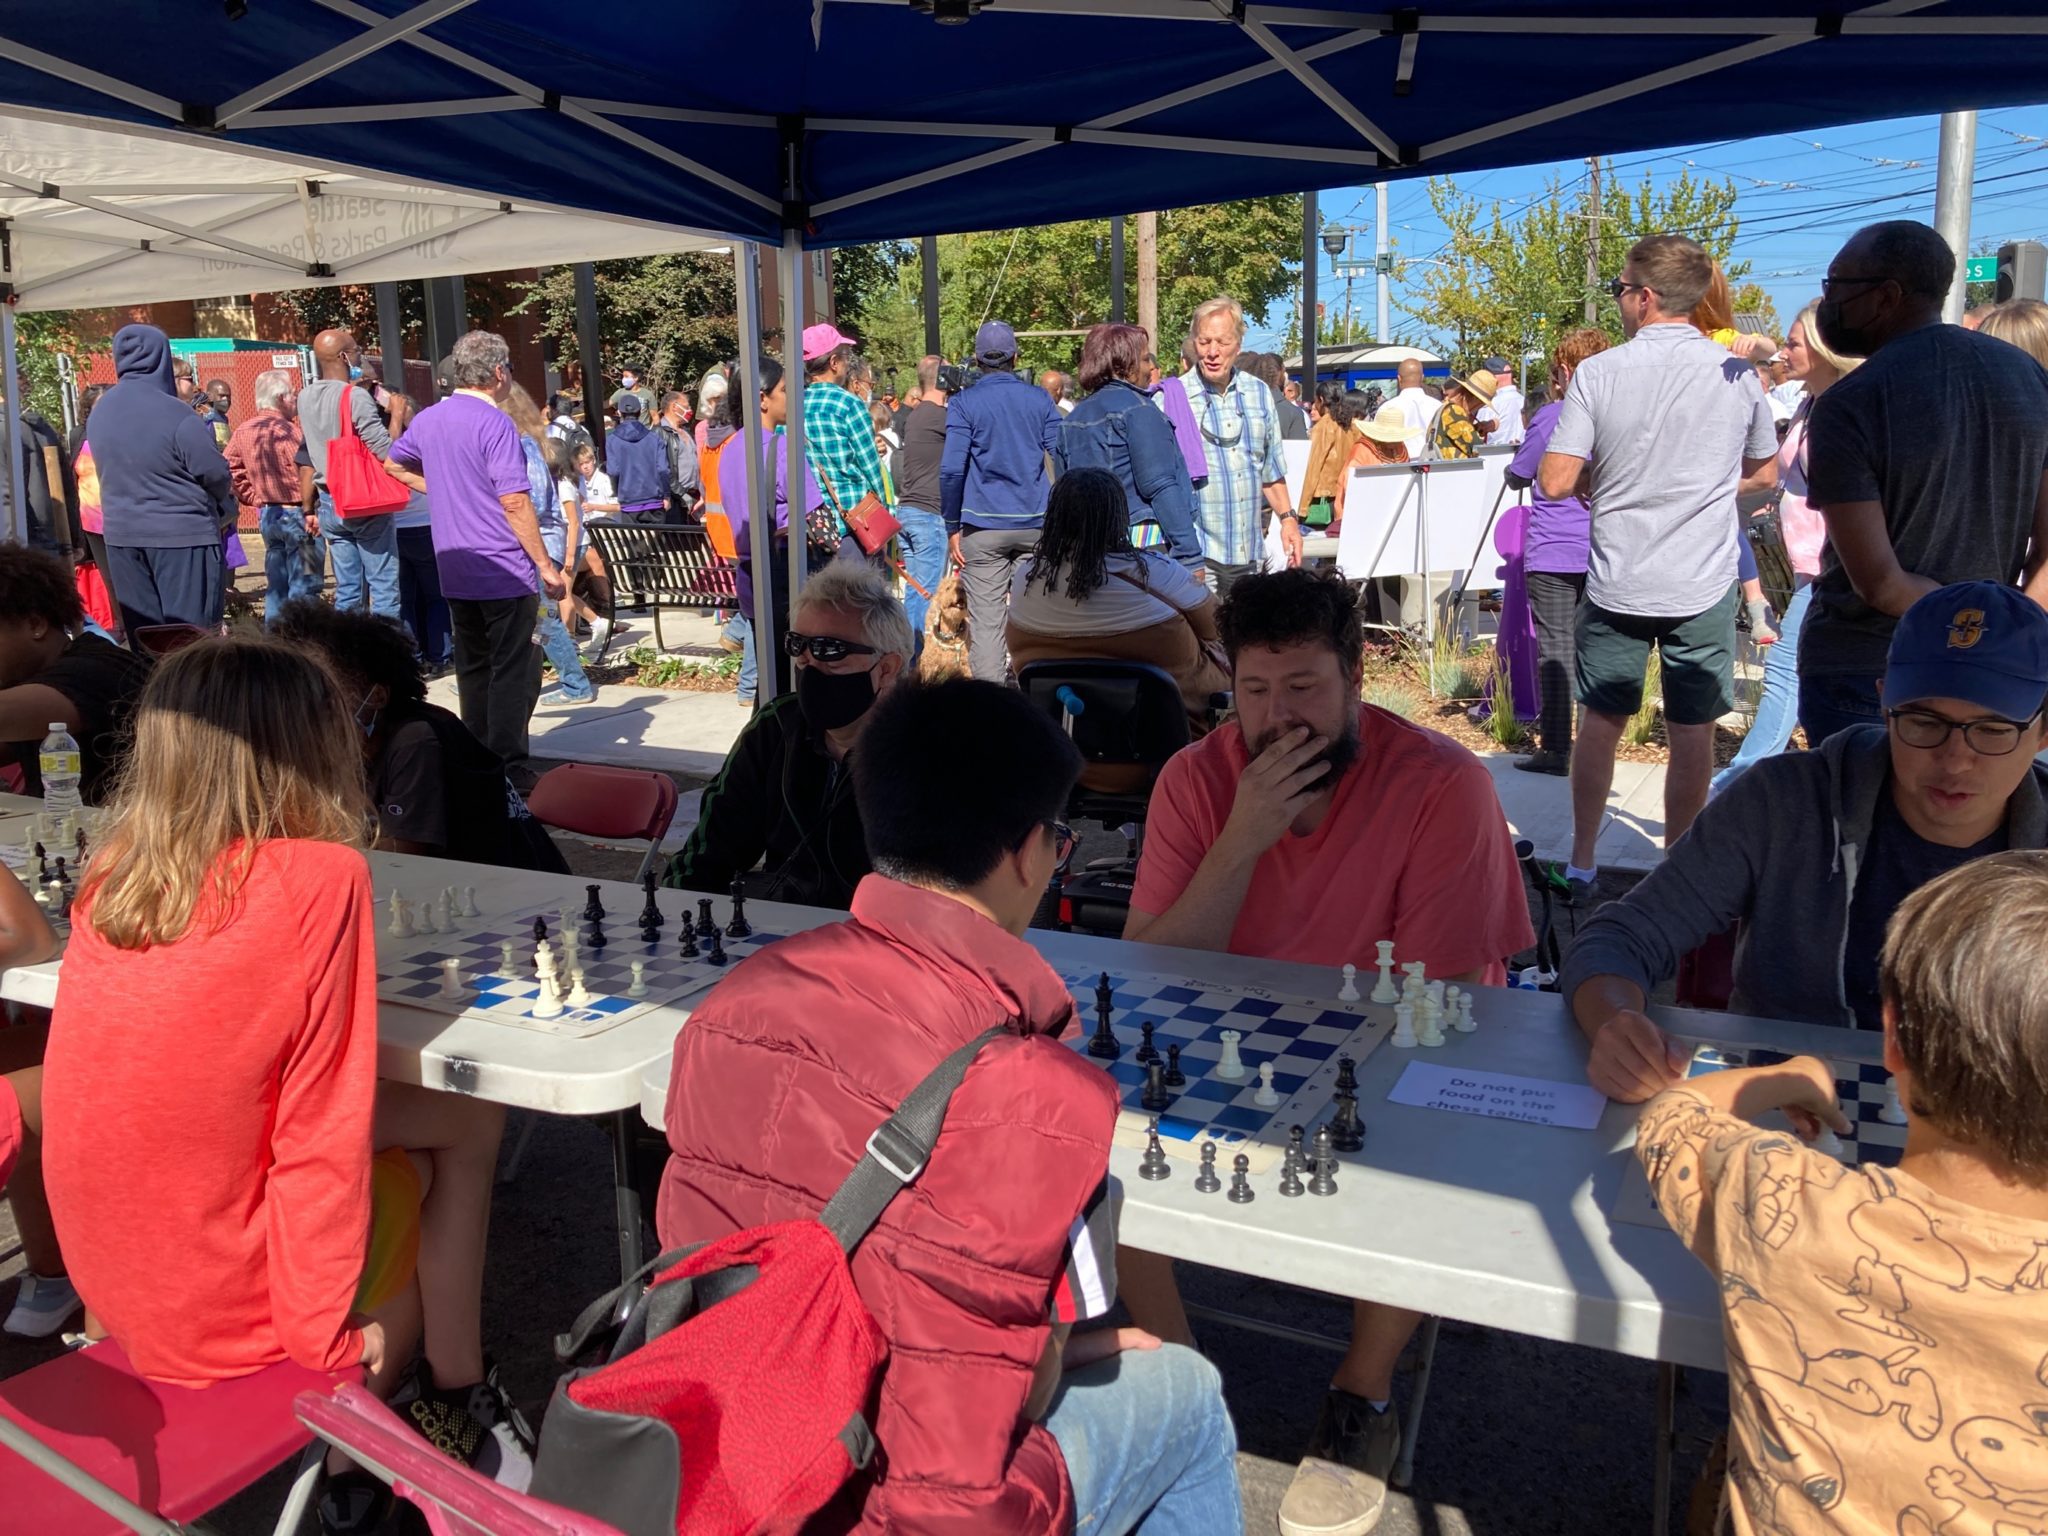 เด็กและผู้ใหญ่เล่นเกมหมากรุกครั้งแรกที่สวน Chess Detective Cookie Chess ที่เพิ่งเปิดใหม่ในหาด Rainier  คนแถวที่เล่นหมากรุกอยู่ที่โต๊ะอยู่เบื้องหน้า โดยมีผู้คนจำนวนมากเข้าร่วมงานฉลองยืนอยู่ด้านหลัง